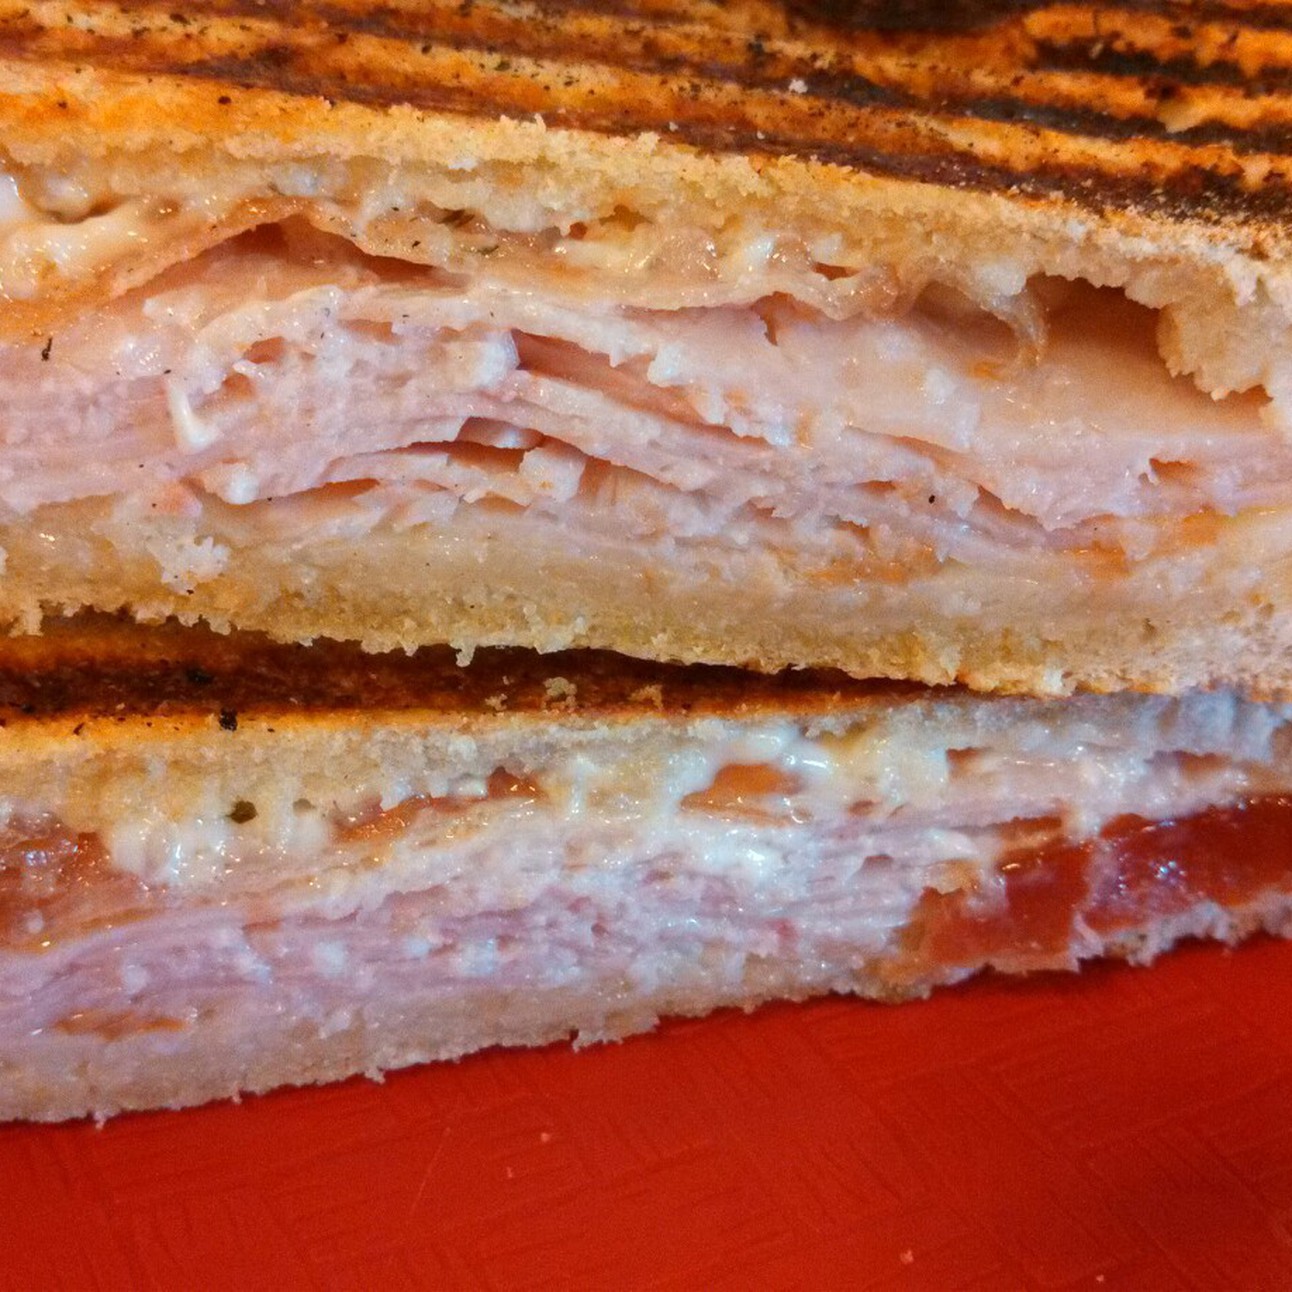 Turkey Bacon Swiss sandwich